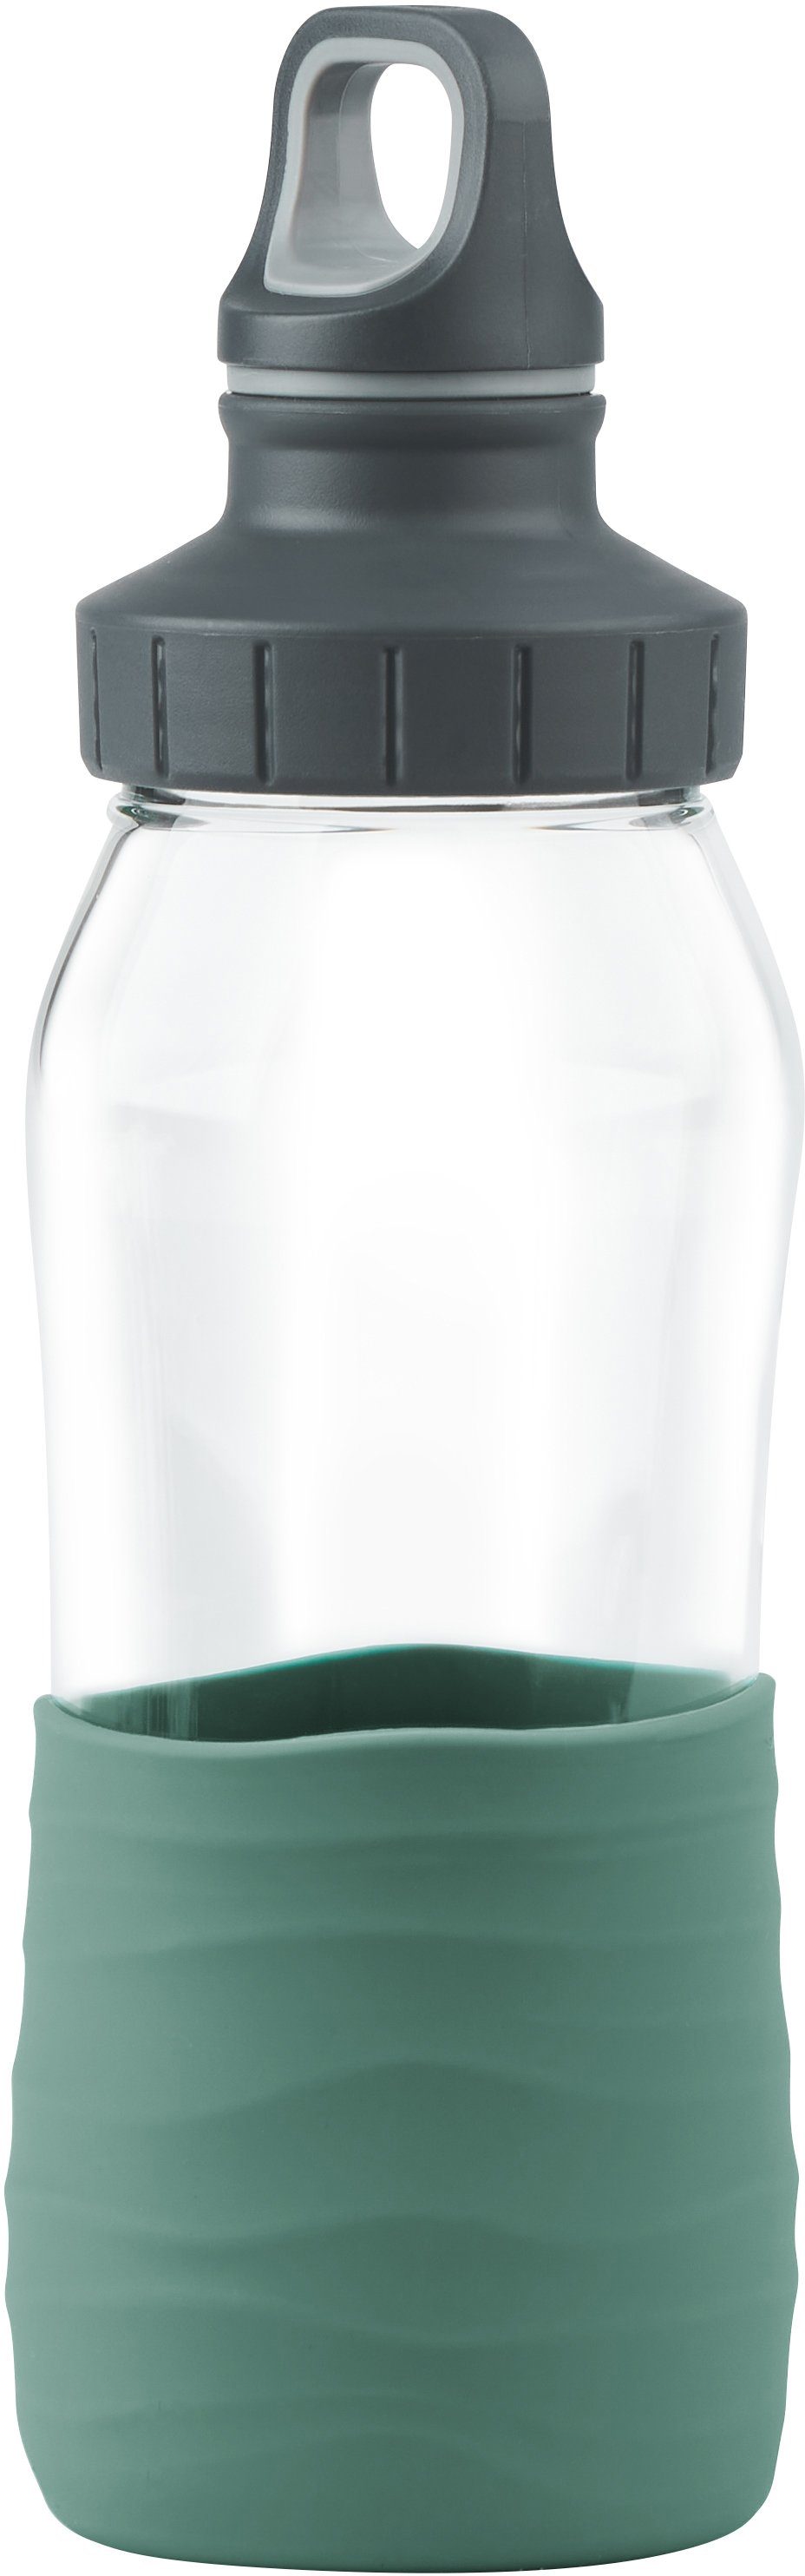 Petrol ml 500 Schraubverschluss, Grün Silikonmanschette, Emsa Trinkflasche dicht/hygienisch/rein, Drink2Go,